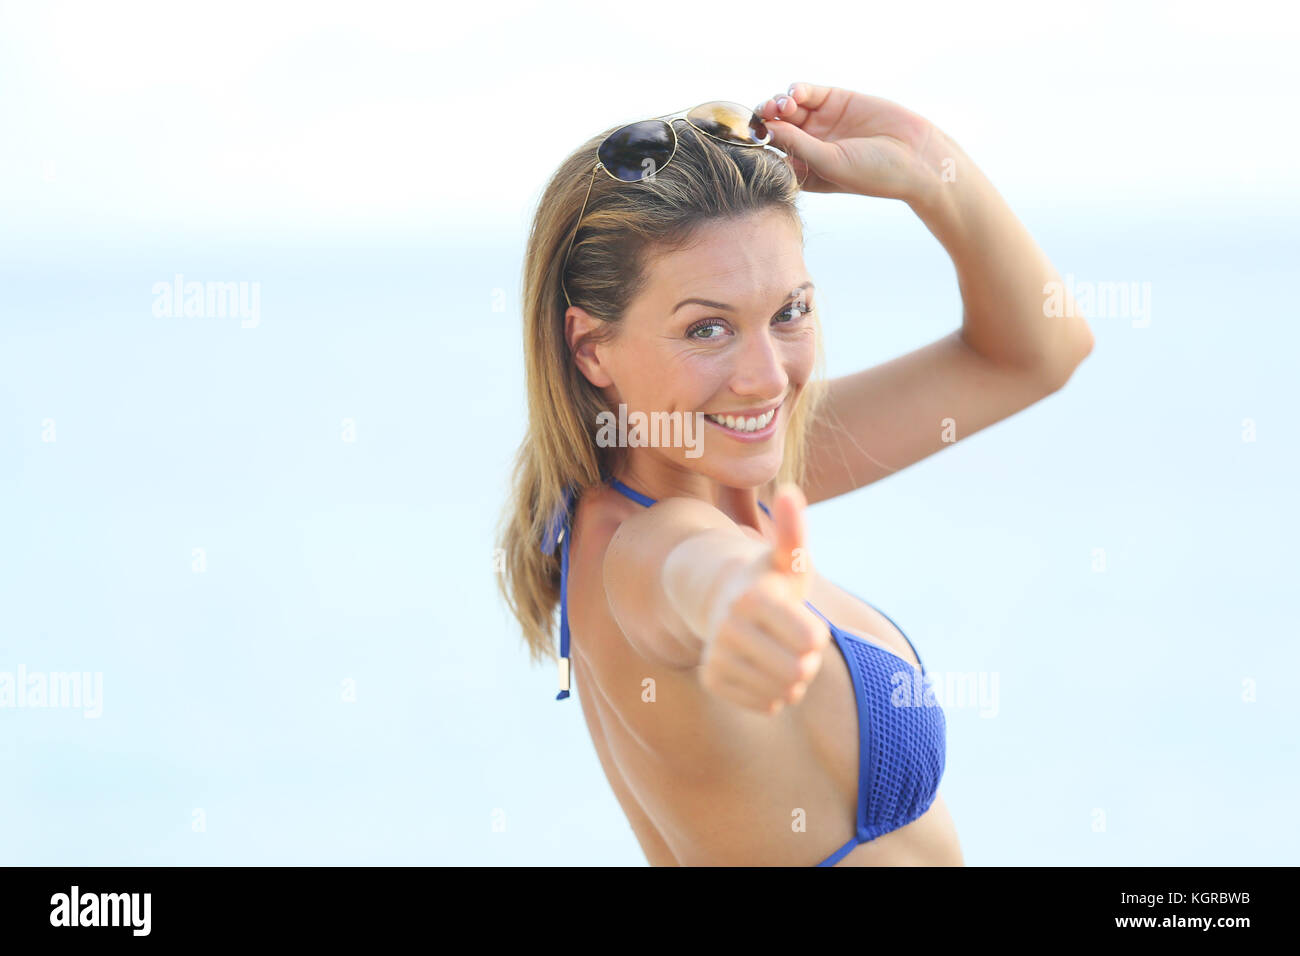 Beautiful woman in bikini showing thumbs up Stock Photo - Alamy